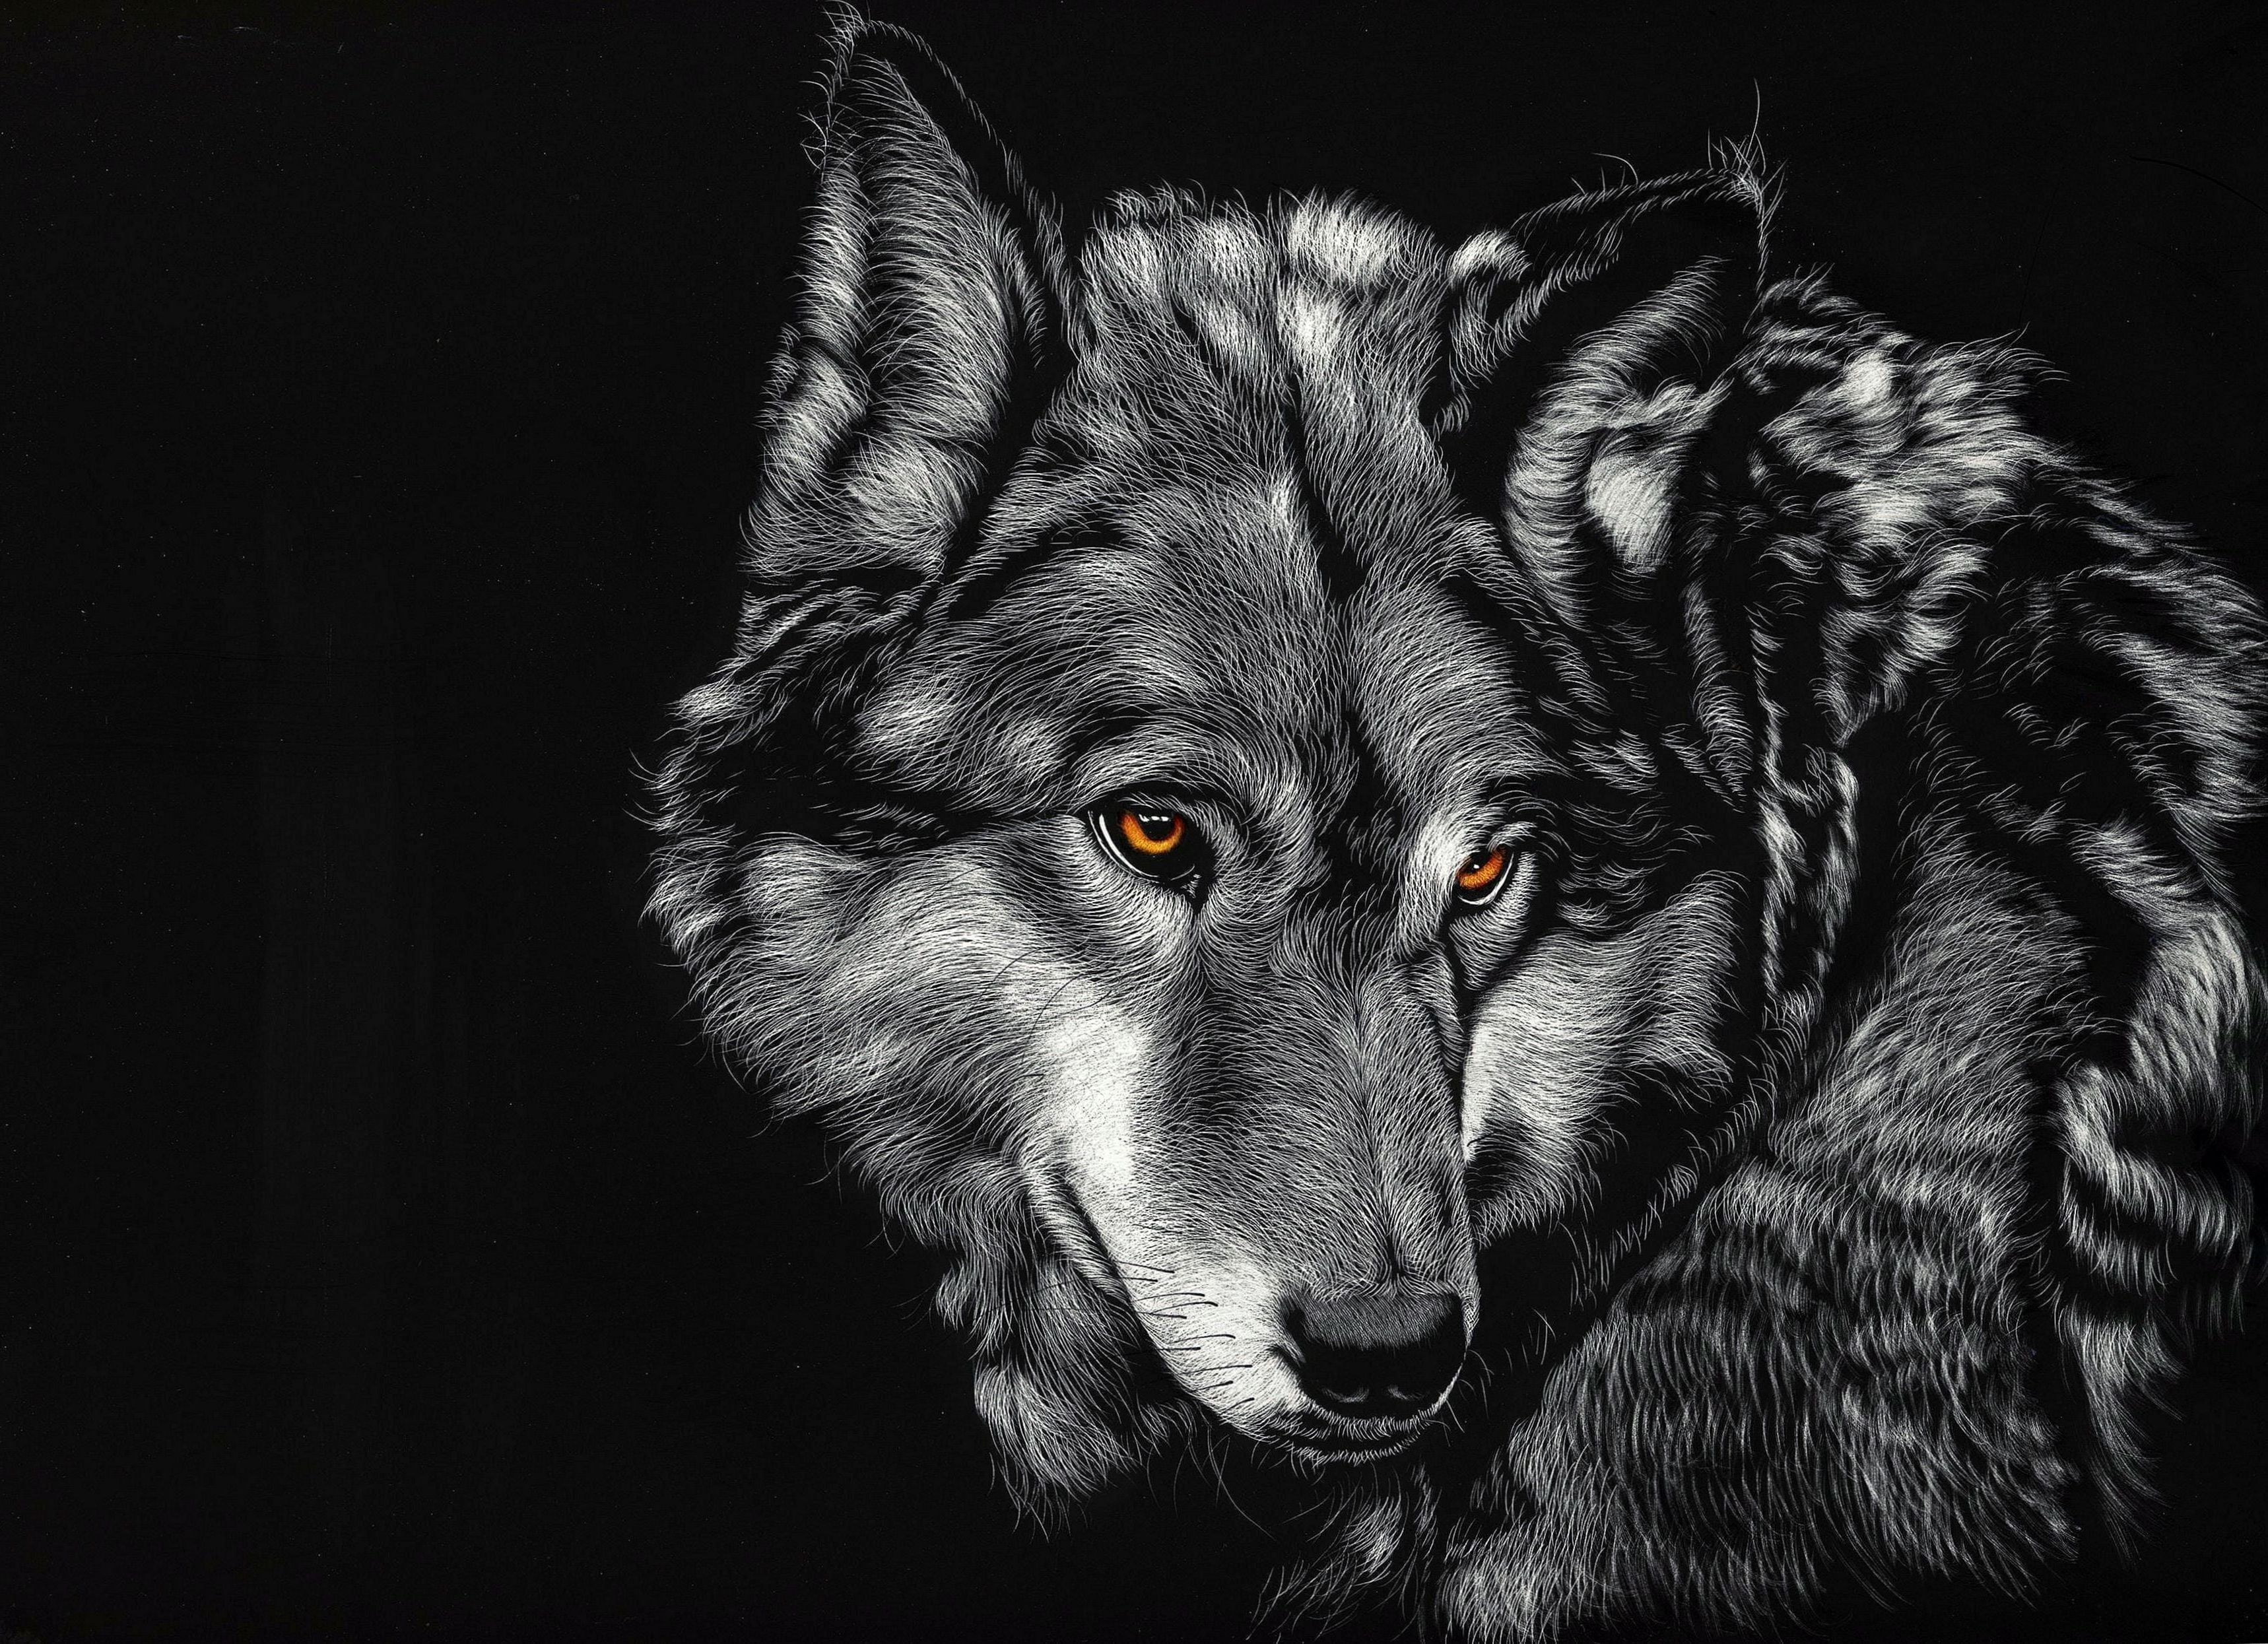 4K Wallpaper Of Wolf K #Wallpaper #Of #Wolf. Wolf wallpaper, Black wolf, Wolf black and white